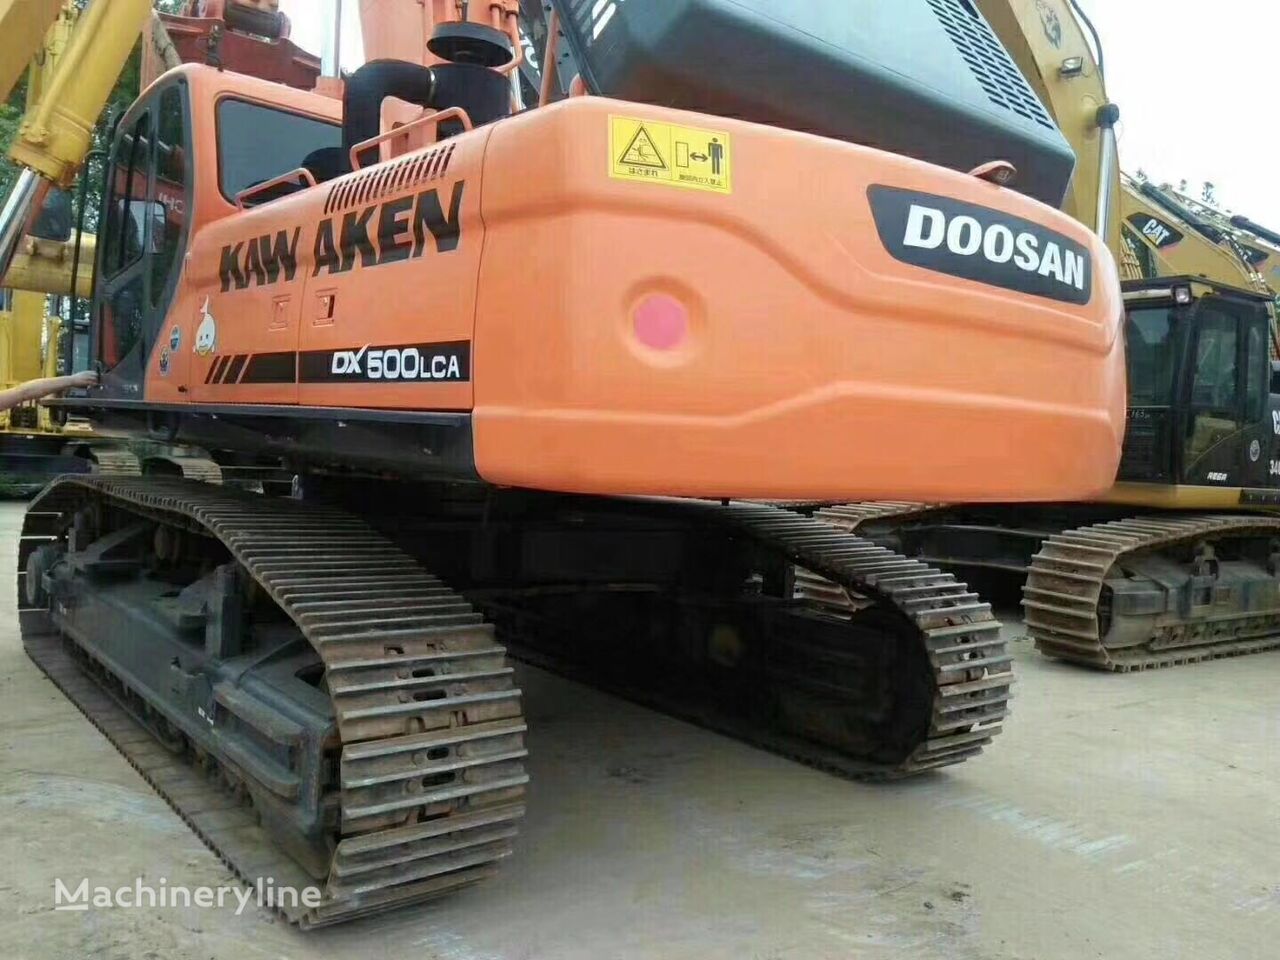 Doosan DX500 tracked excavator